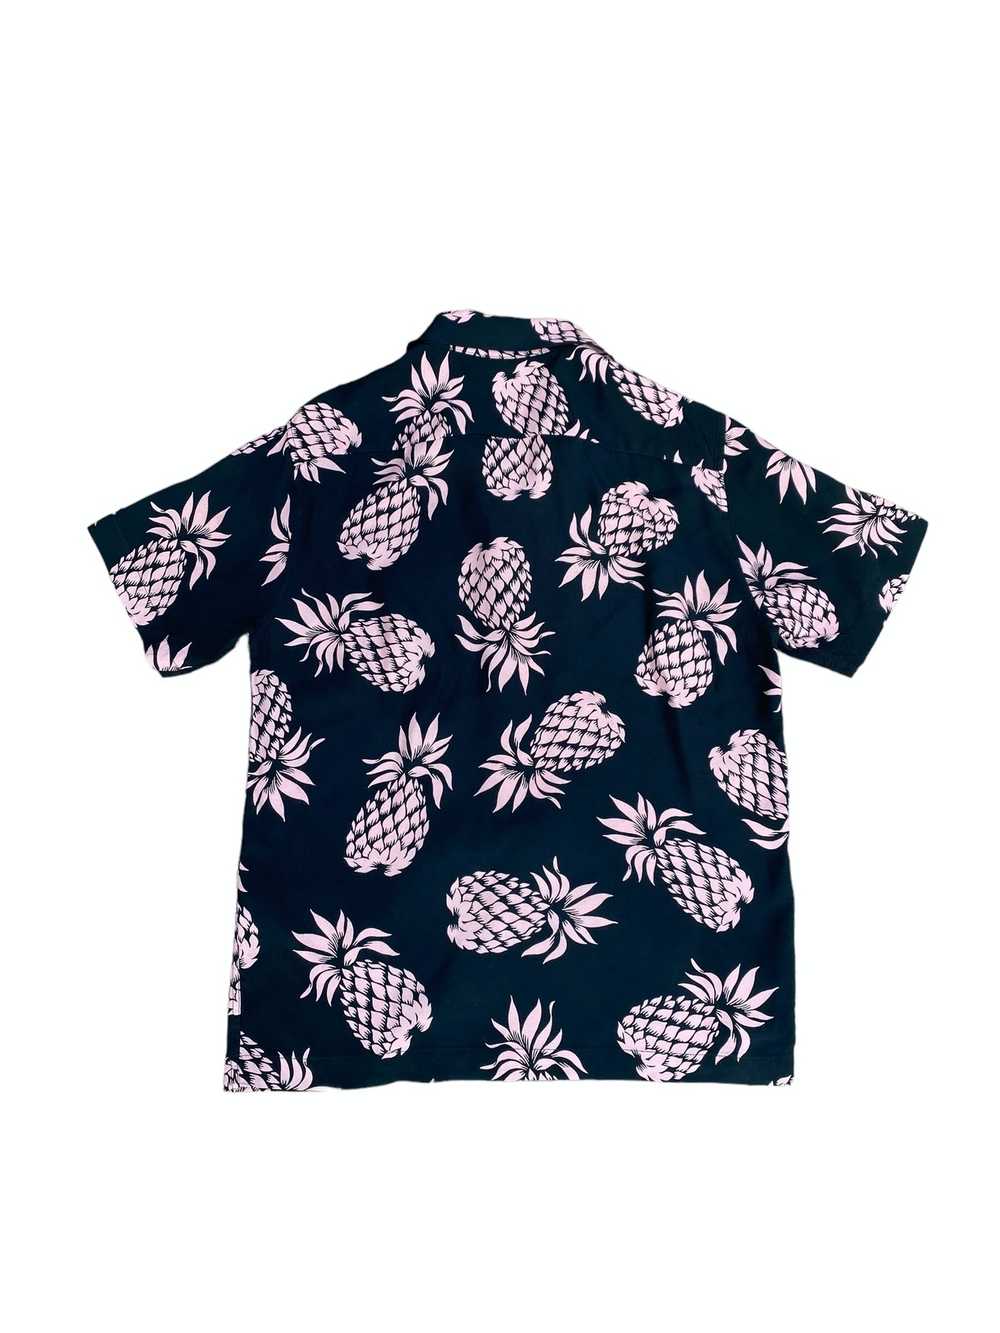 Sandro Black Pink Floral Hawaiian shirt - image 3